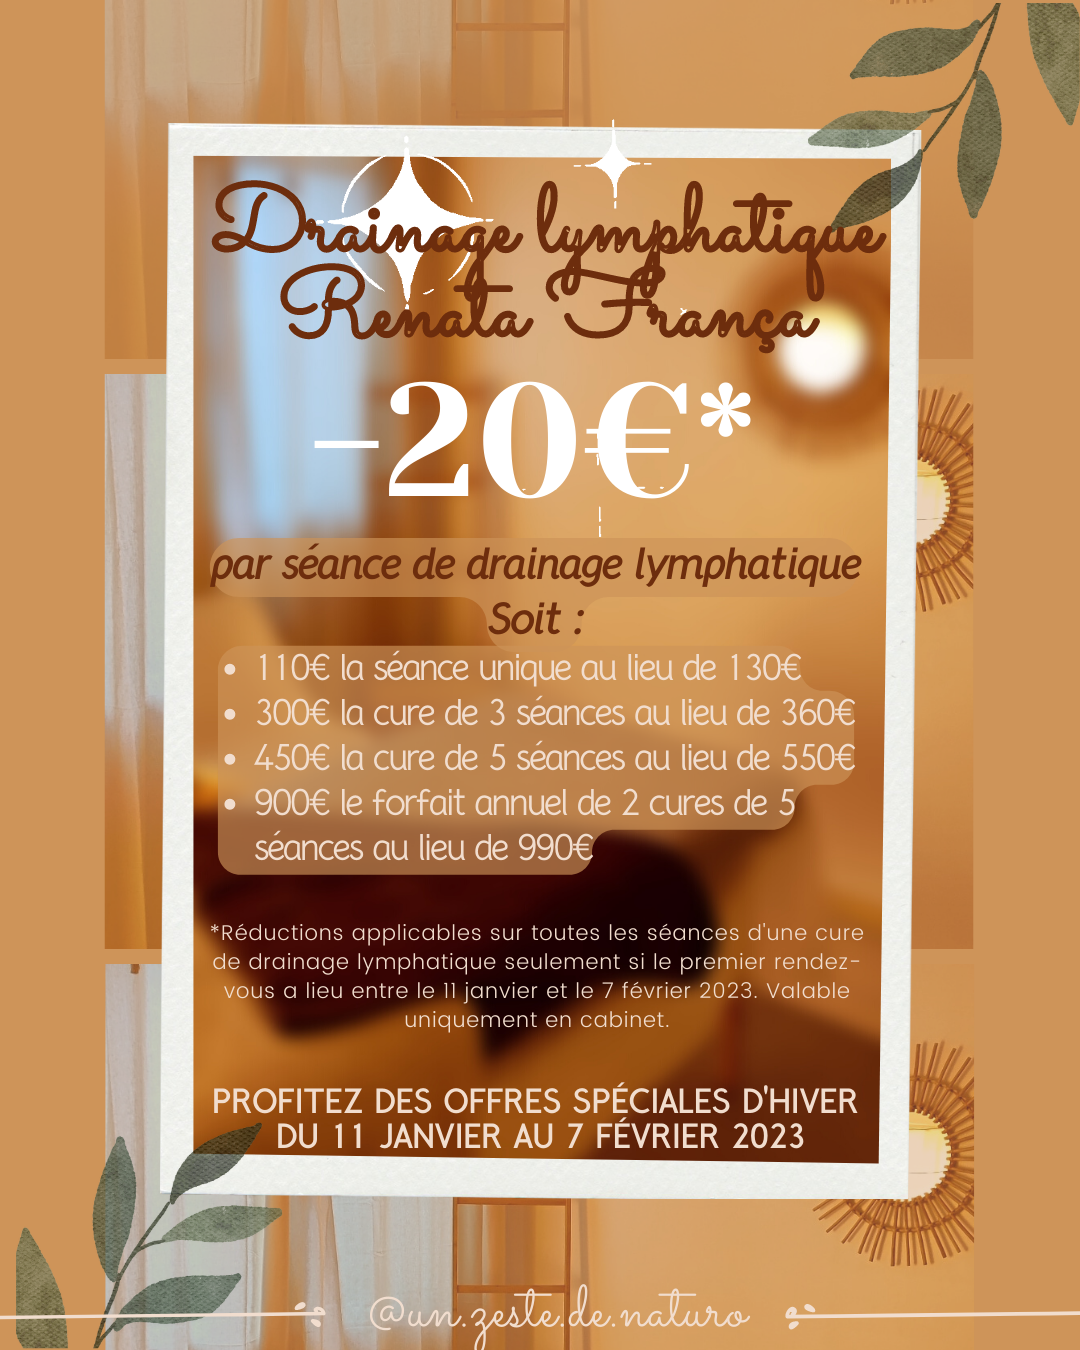 Offre spéciale sur le drainage lymphatique Renata França à Lançon-Provence